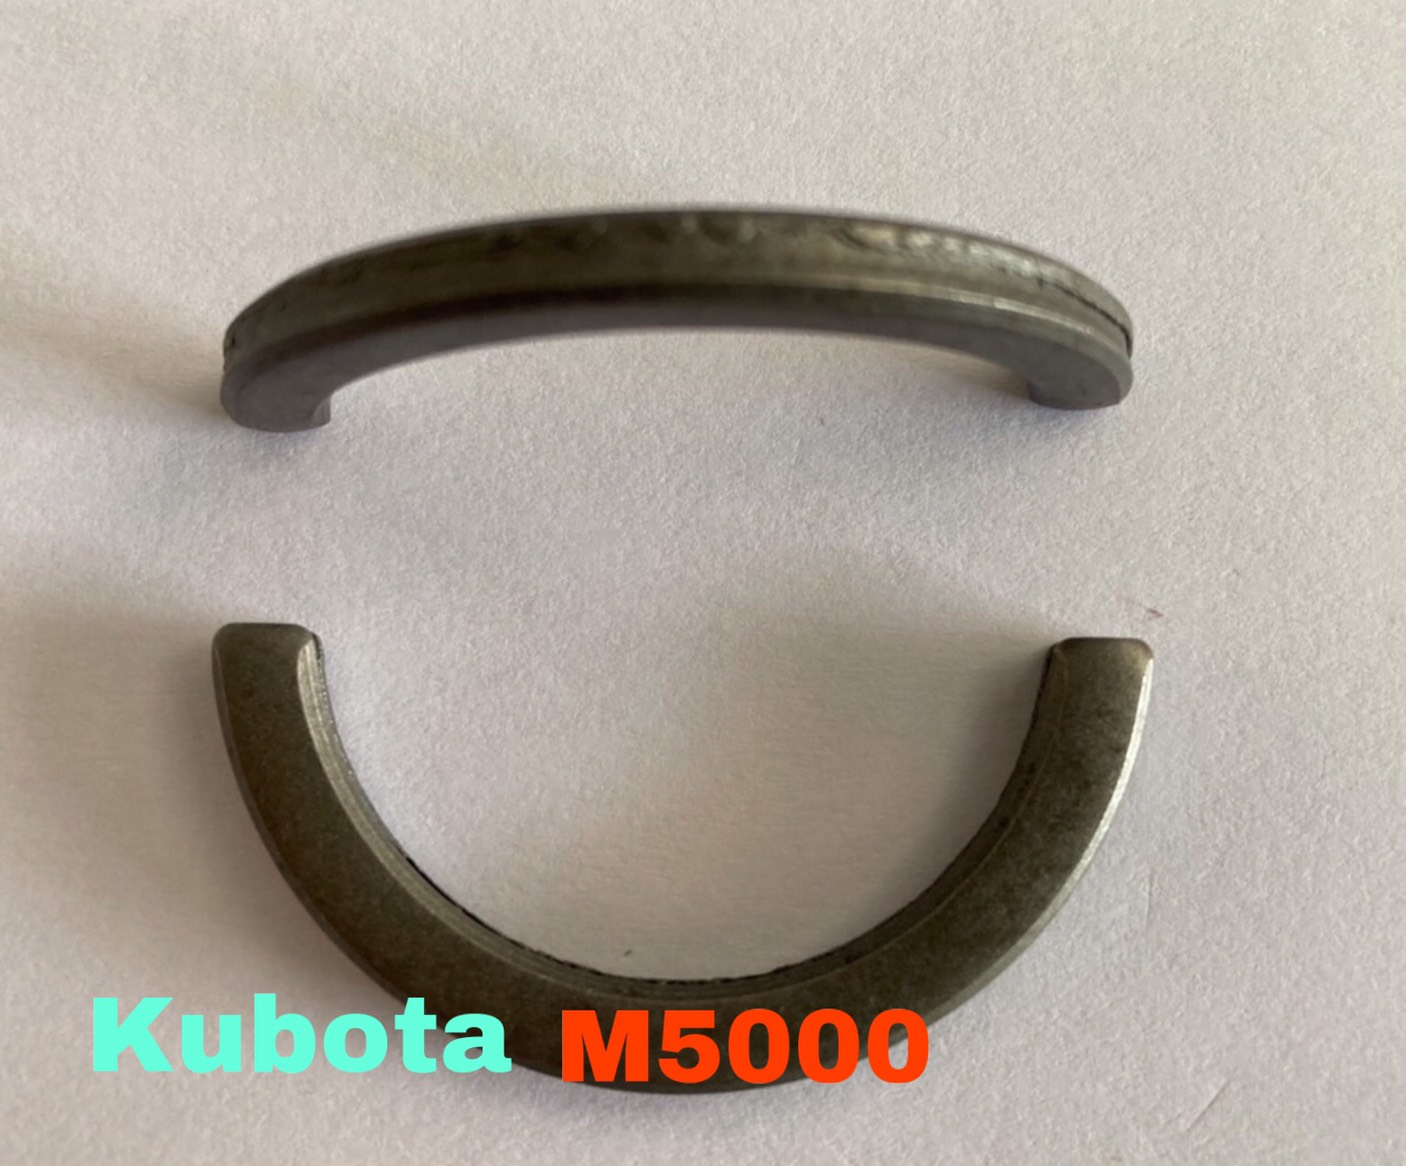 คูโบต้า M5000 แหวน เกือกม้า ล็อคดุมล้อหน้า (Kubota) (แหวน คอลล่า ล๊อคดุมล้อหน้า เพลาล้อหน้า) (1ชุดมี 2 ตัว)